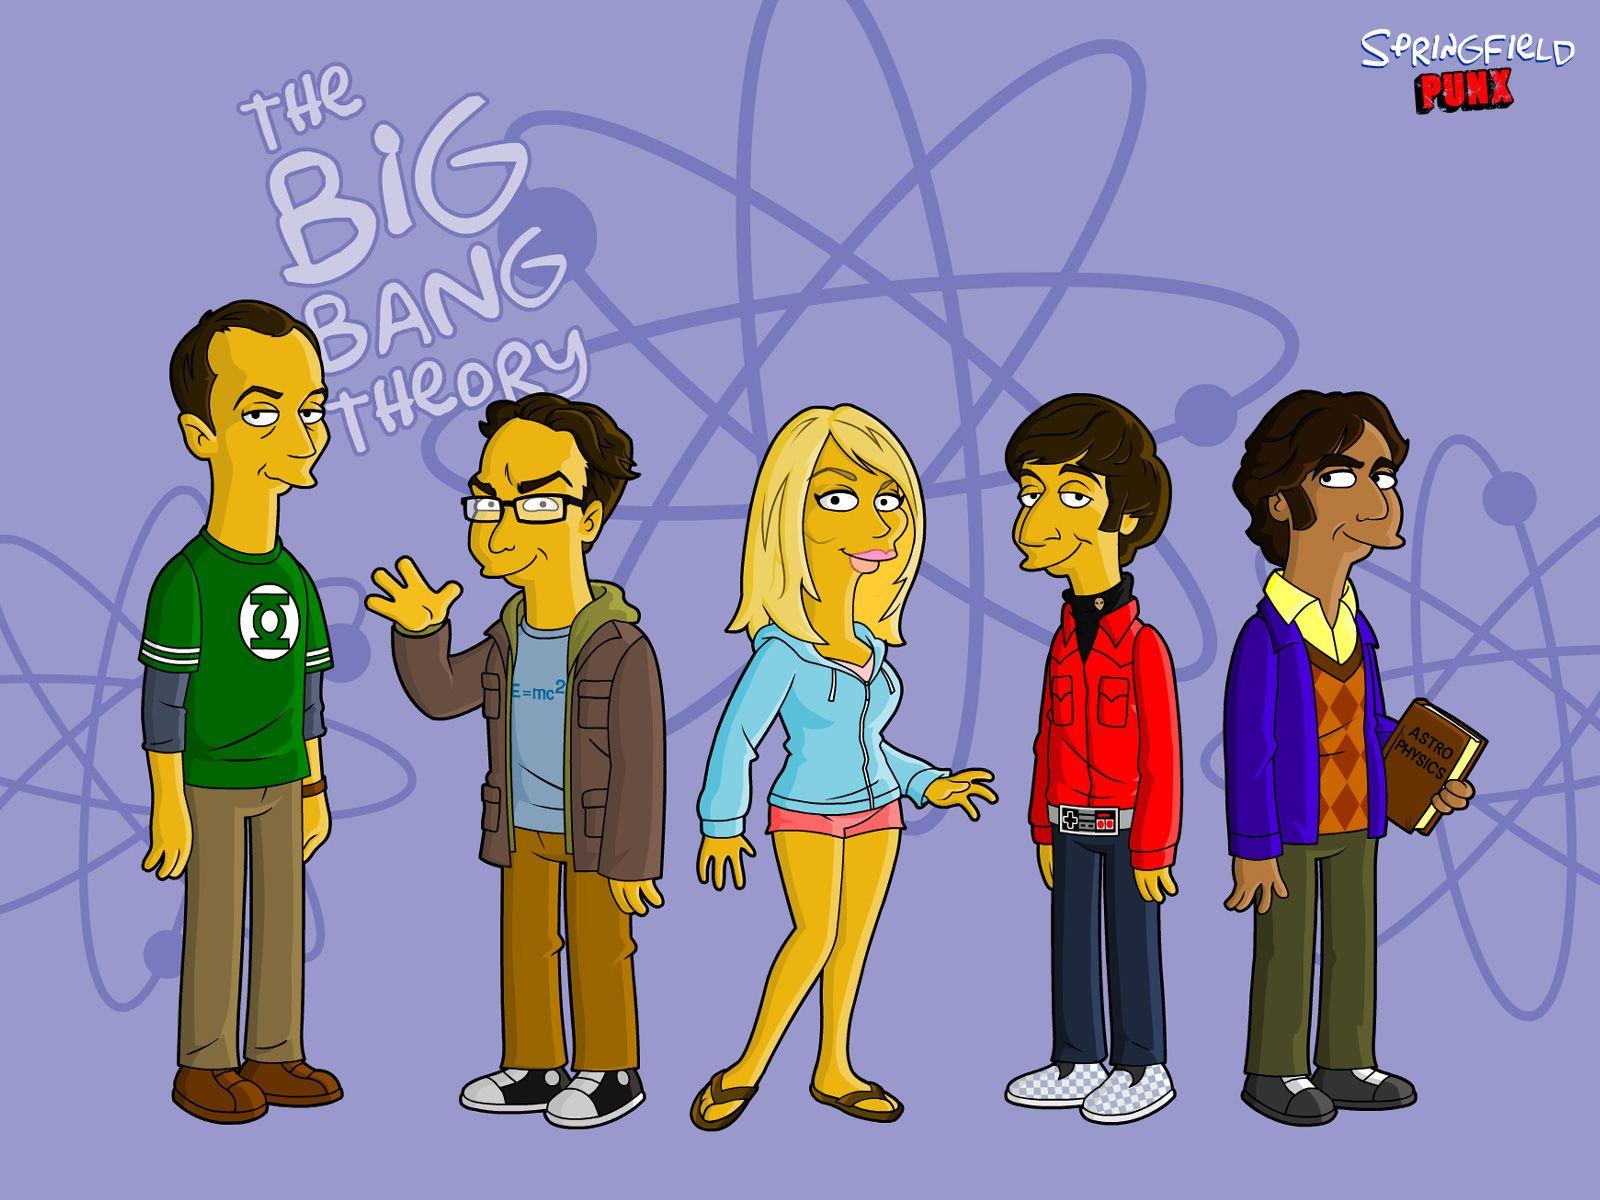 Springfield Punx: The Big Bang Theory Wallpaper!